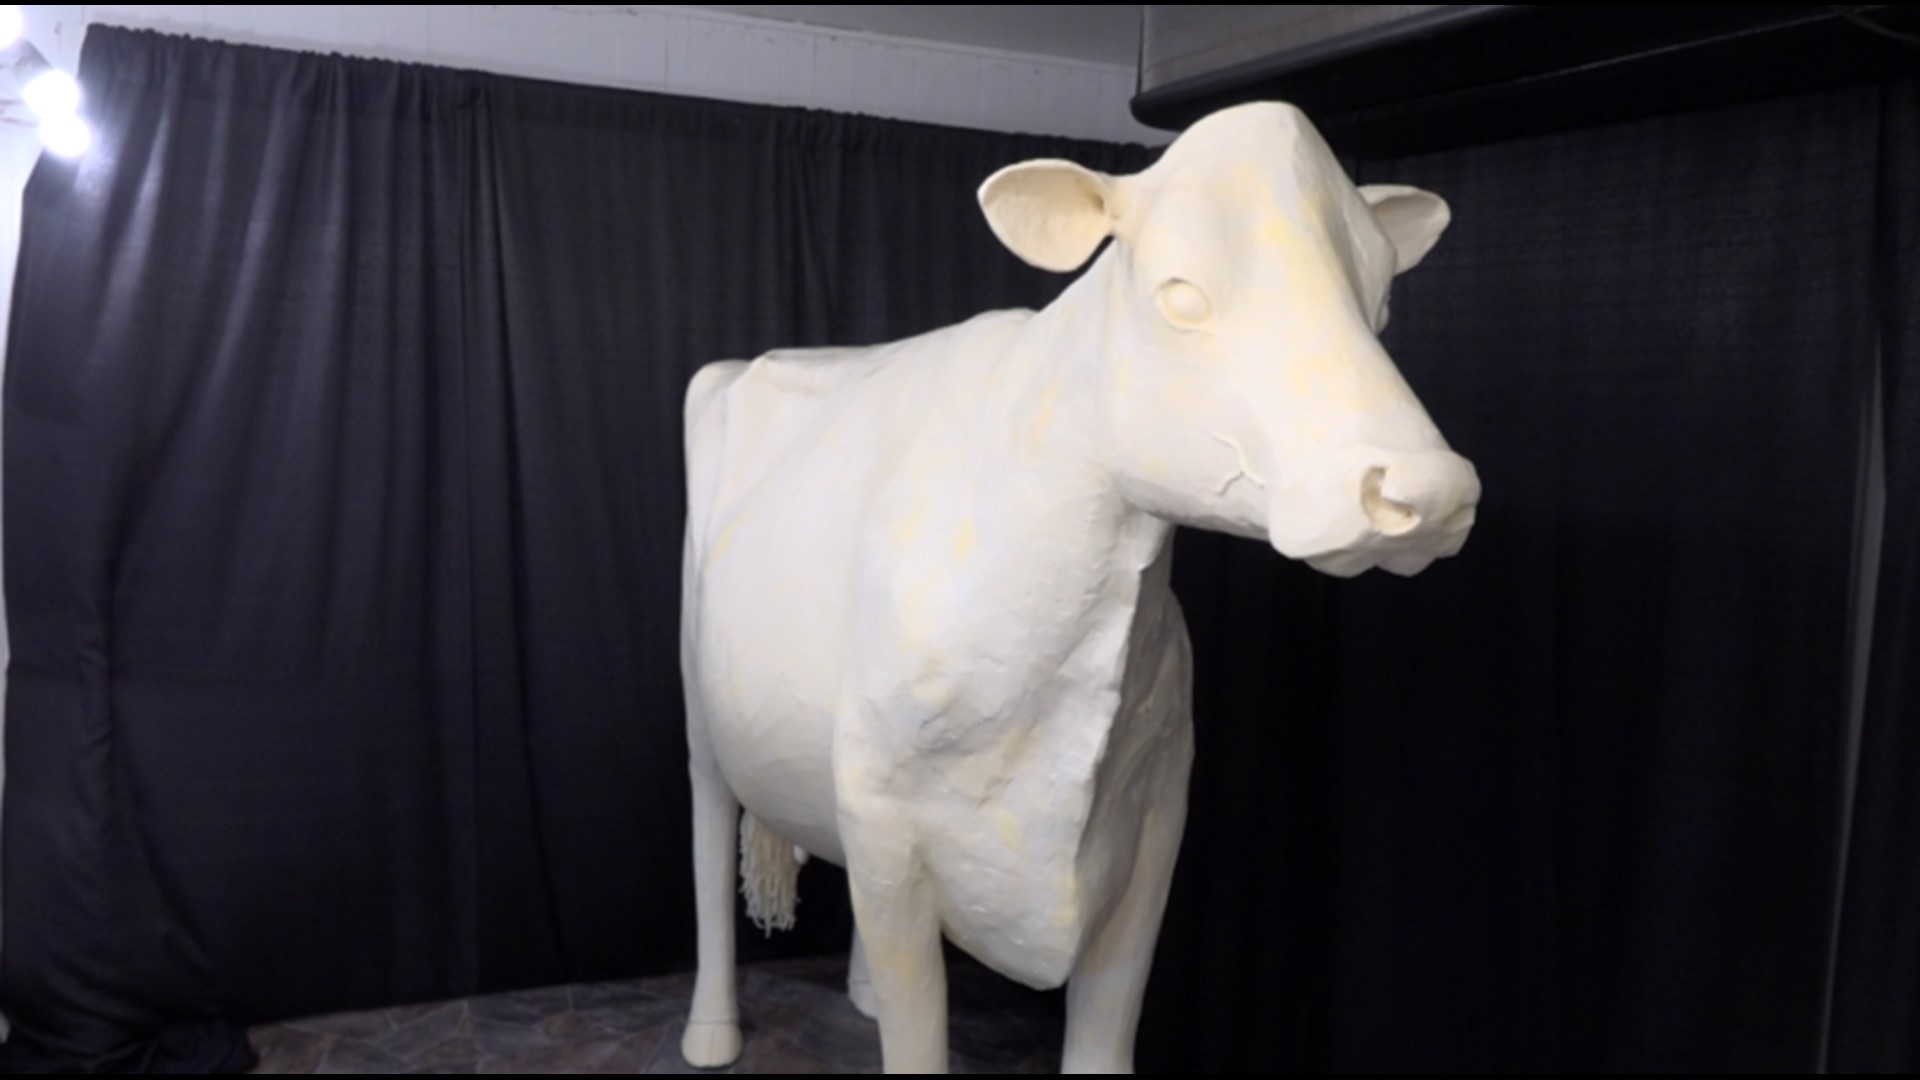 Butter cow sculptor Sarah Pratt shares story behind